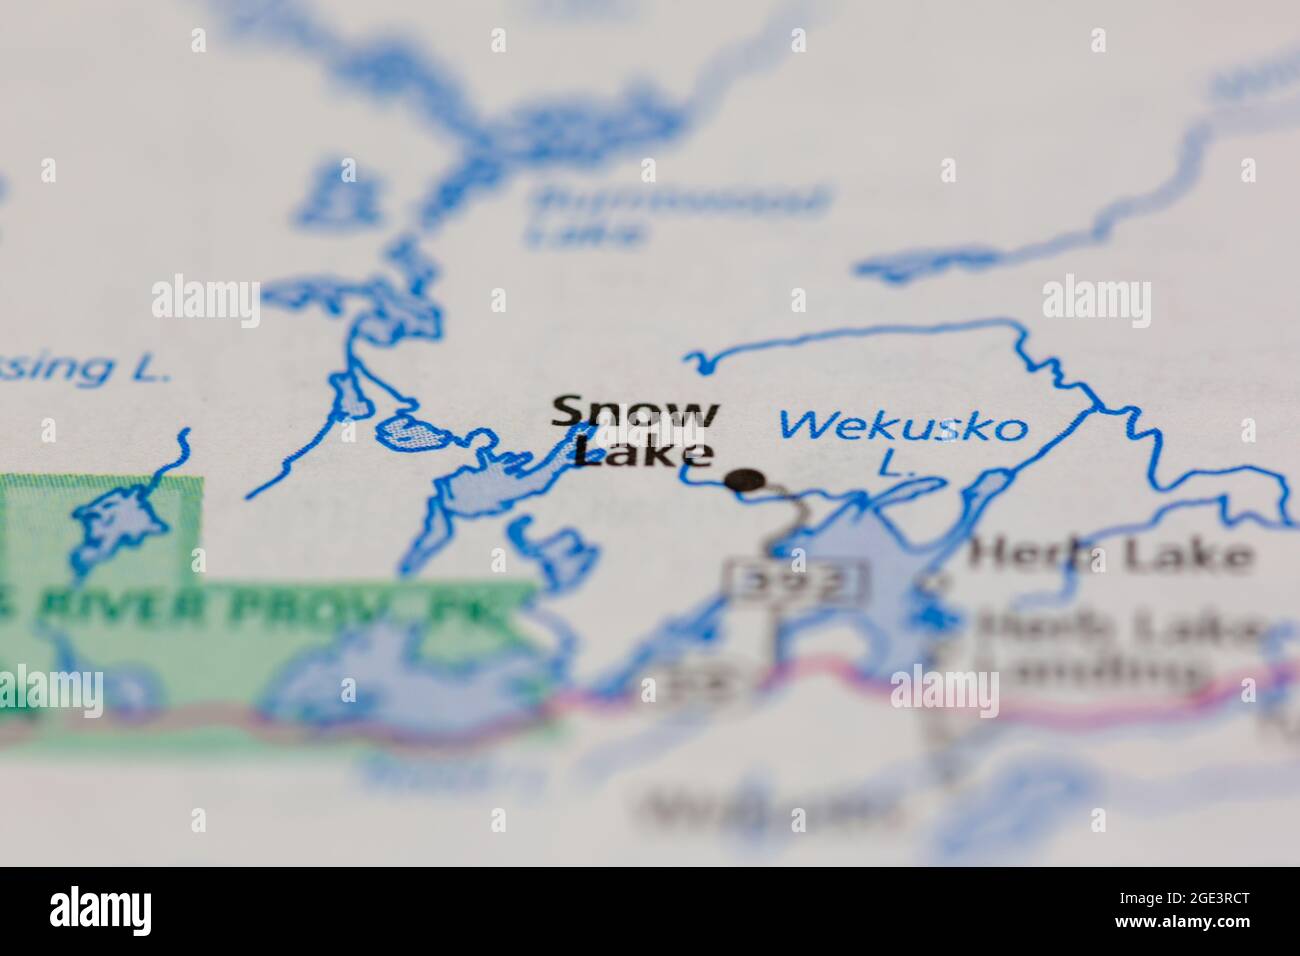 Snow Lake Saskatchewan Kanada auf einer Straßenkarte oder Geographie-Karte angezeigt Stockfoto